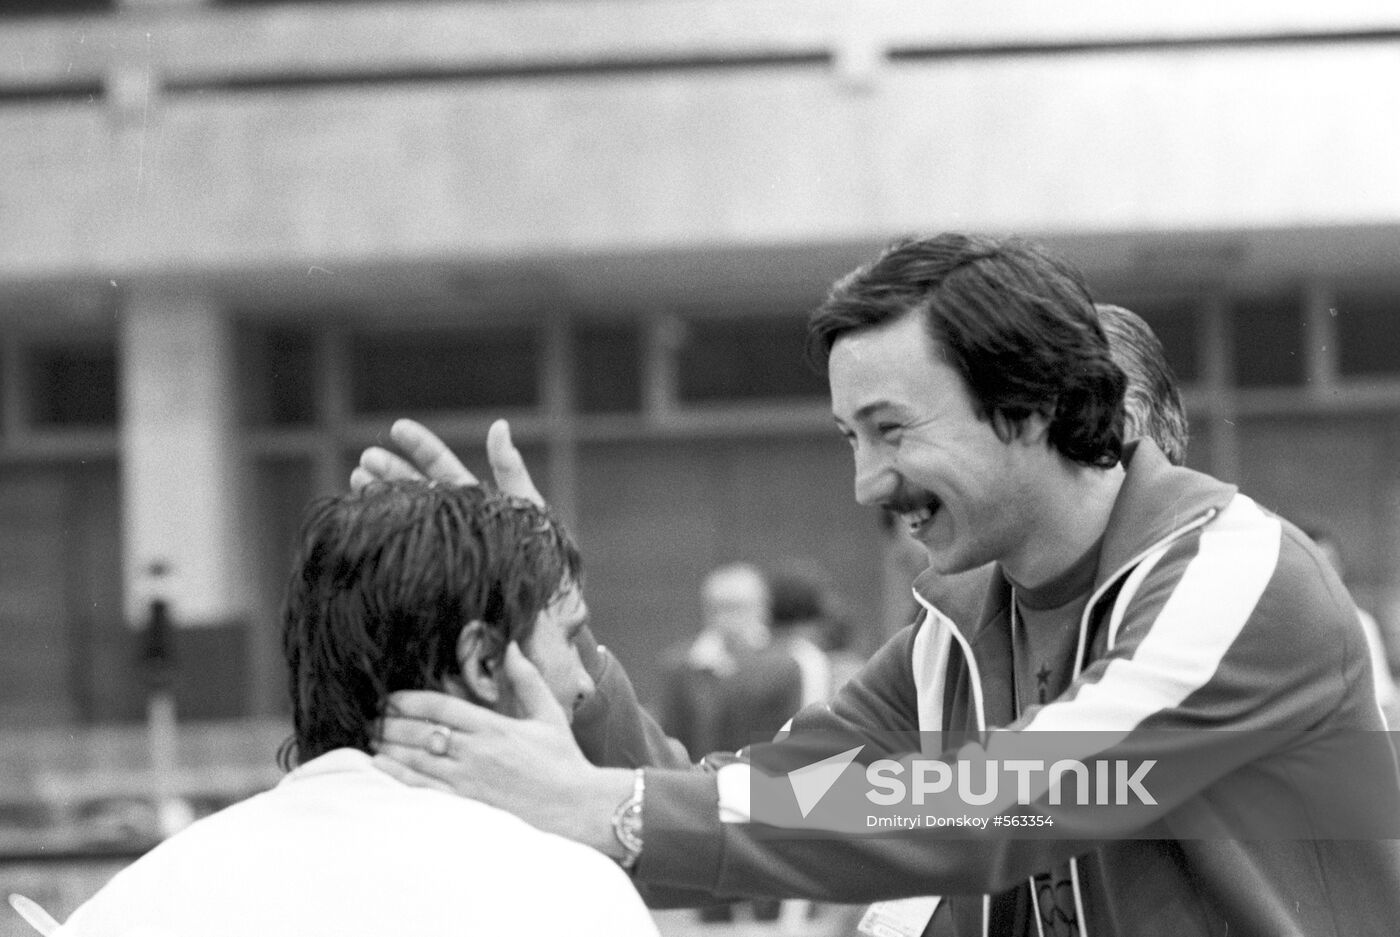 Olympics-80 fencing champion Viktor Krovopuskov